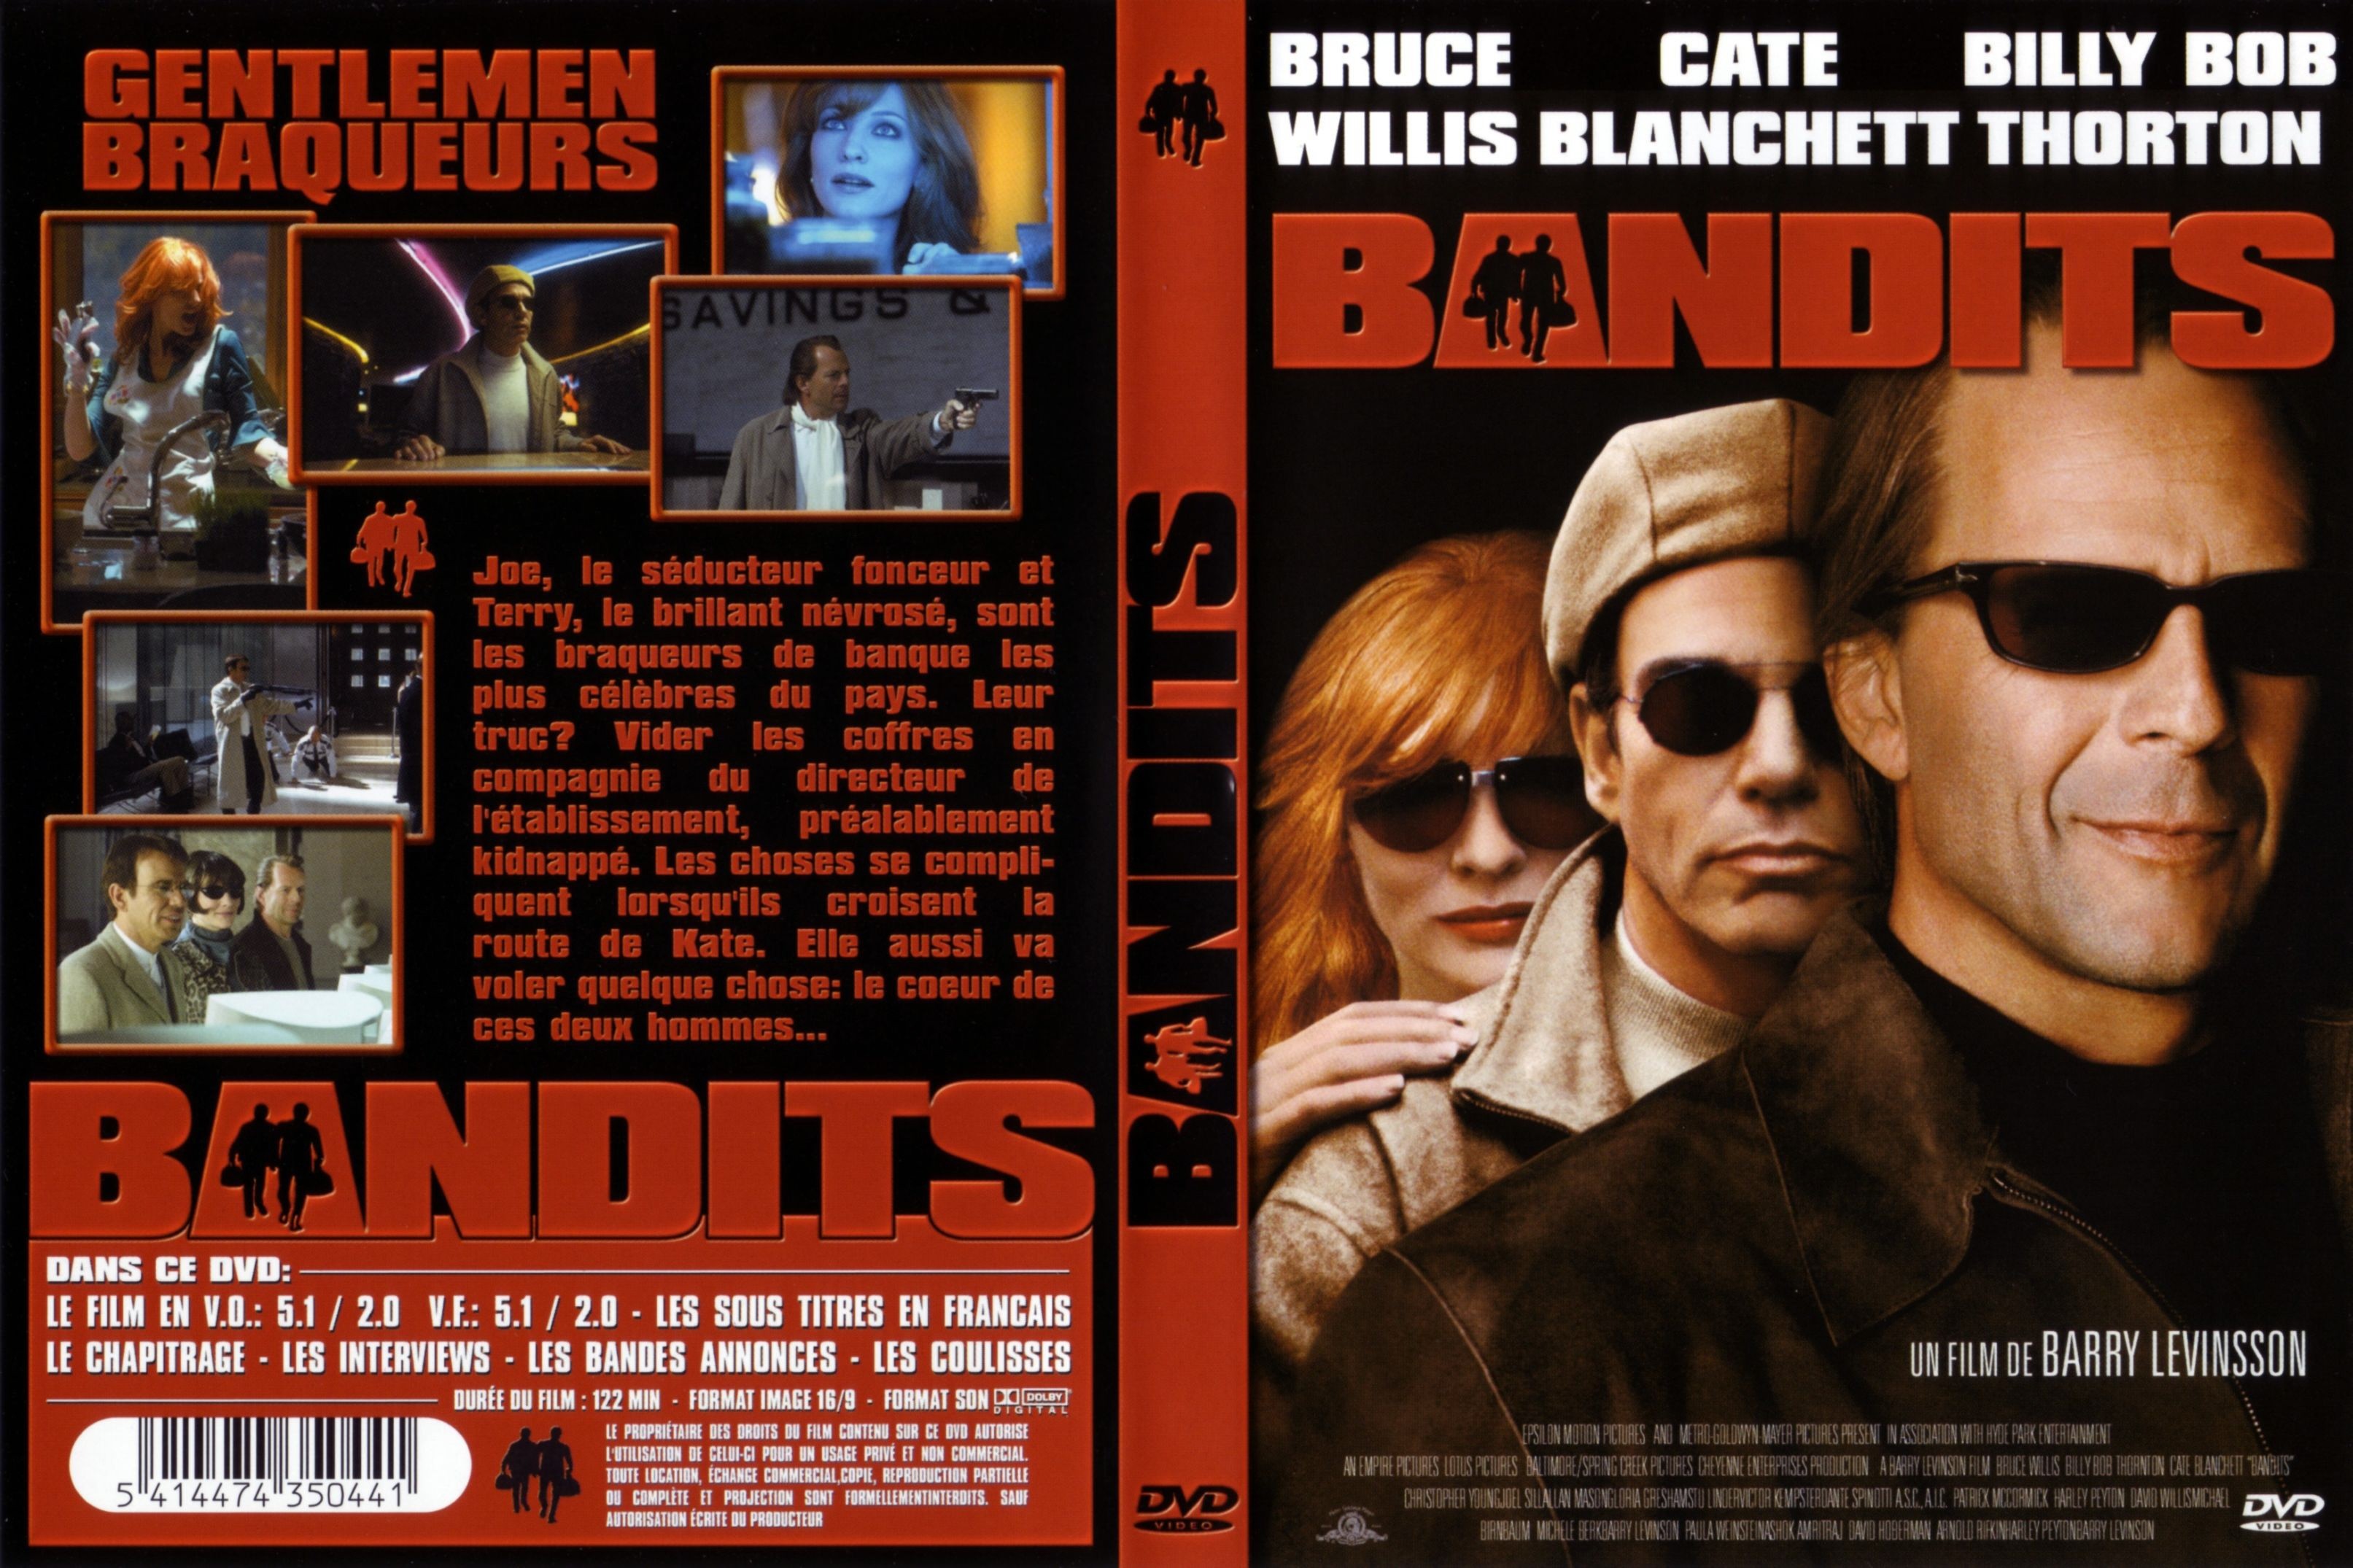 Jaquette DVD Bandits v2